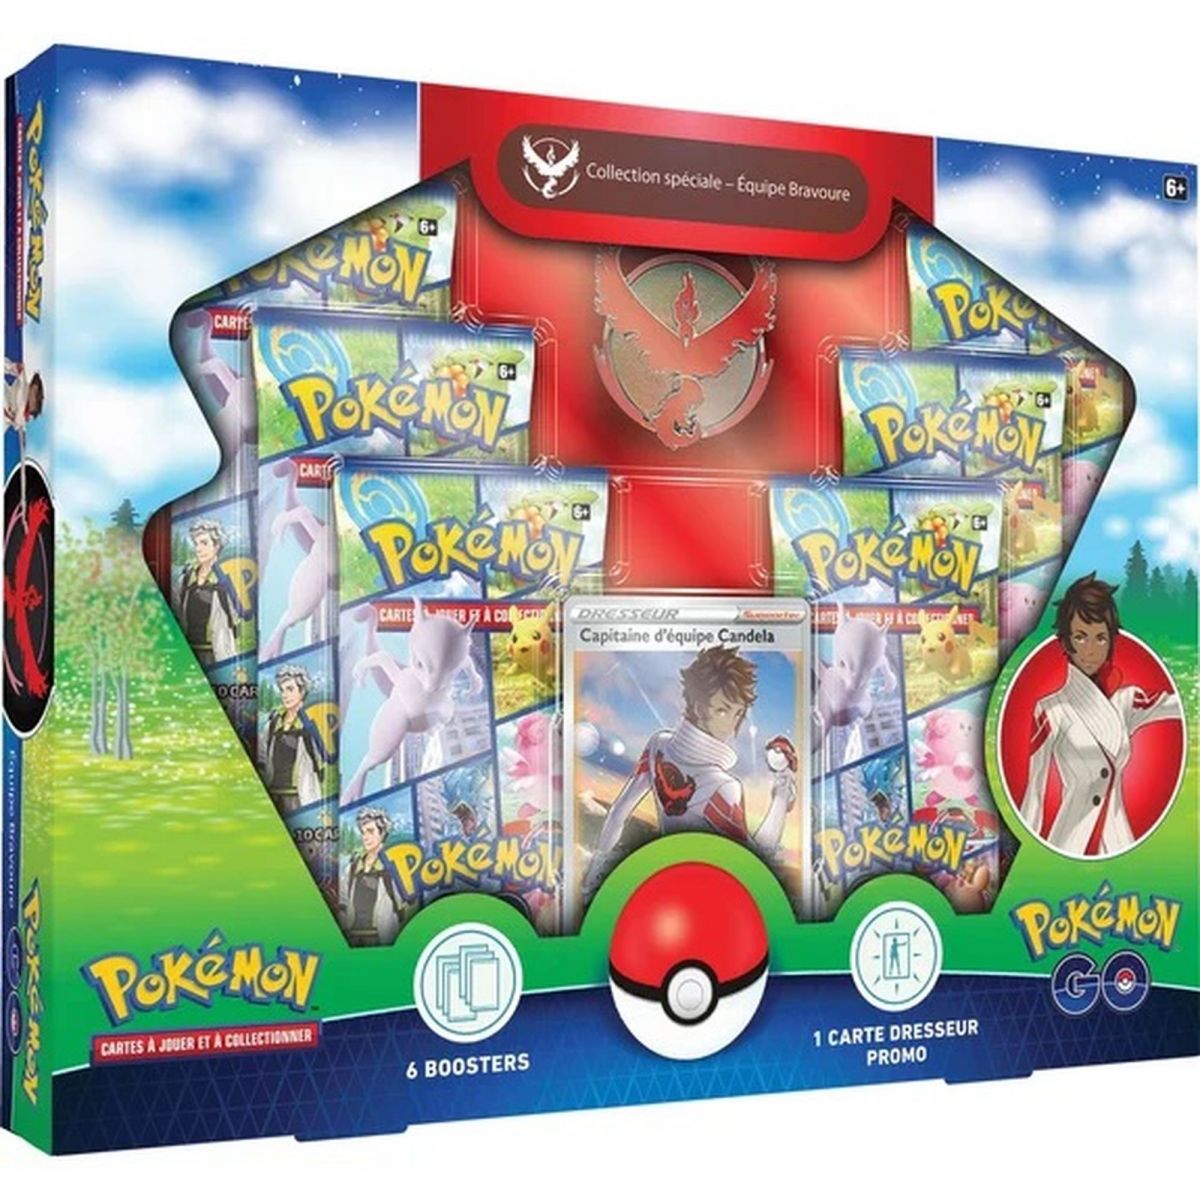 Pokémon – Box – Spezial-Sammelbox – Team Bravery – Pokémon Go [EB10.5] – FR